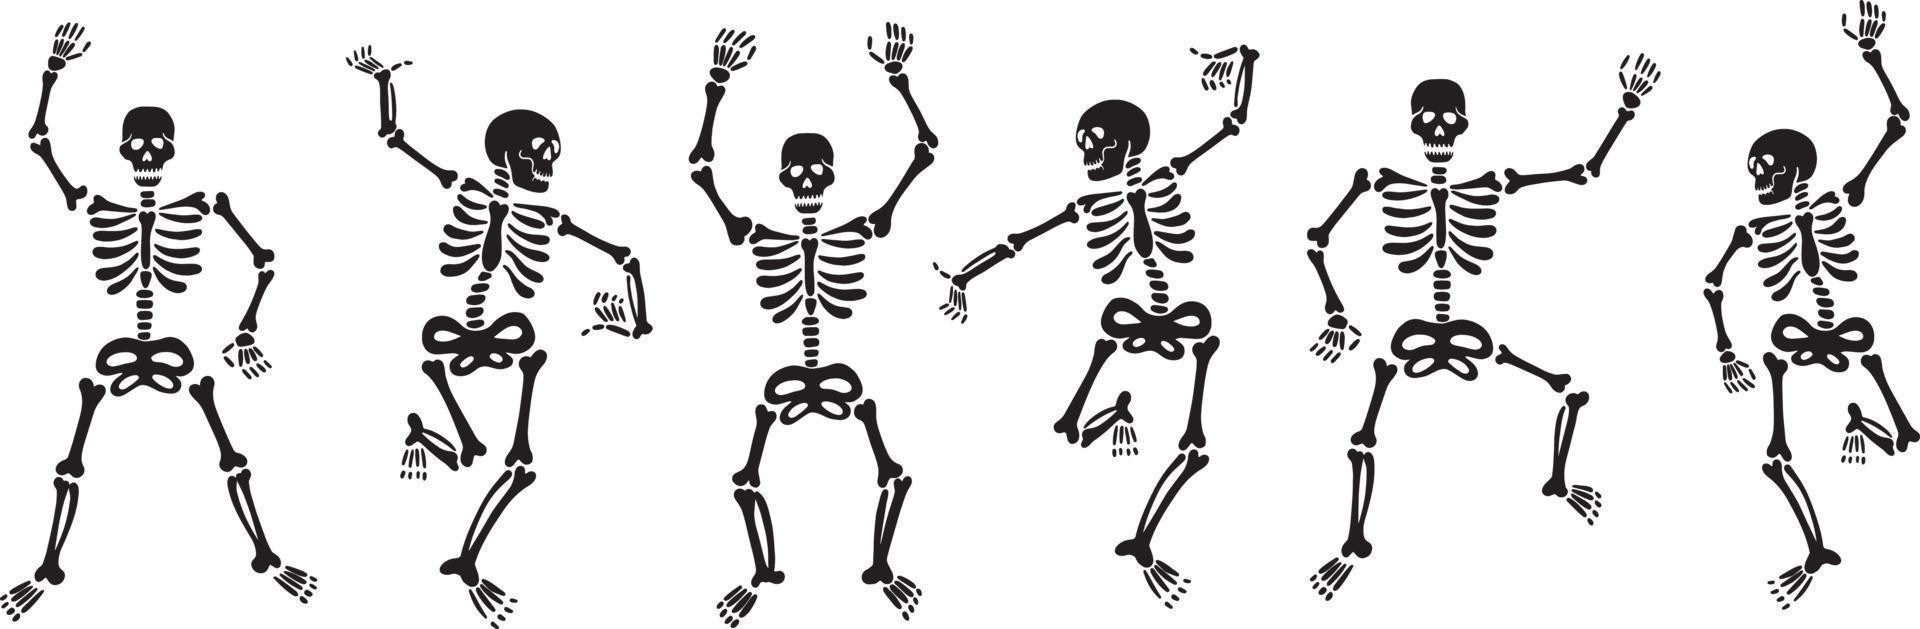 conjunto de esqueletos negros bailando enérgicamente y divirtiéndose vector